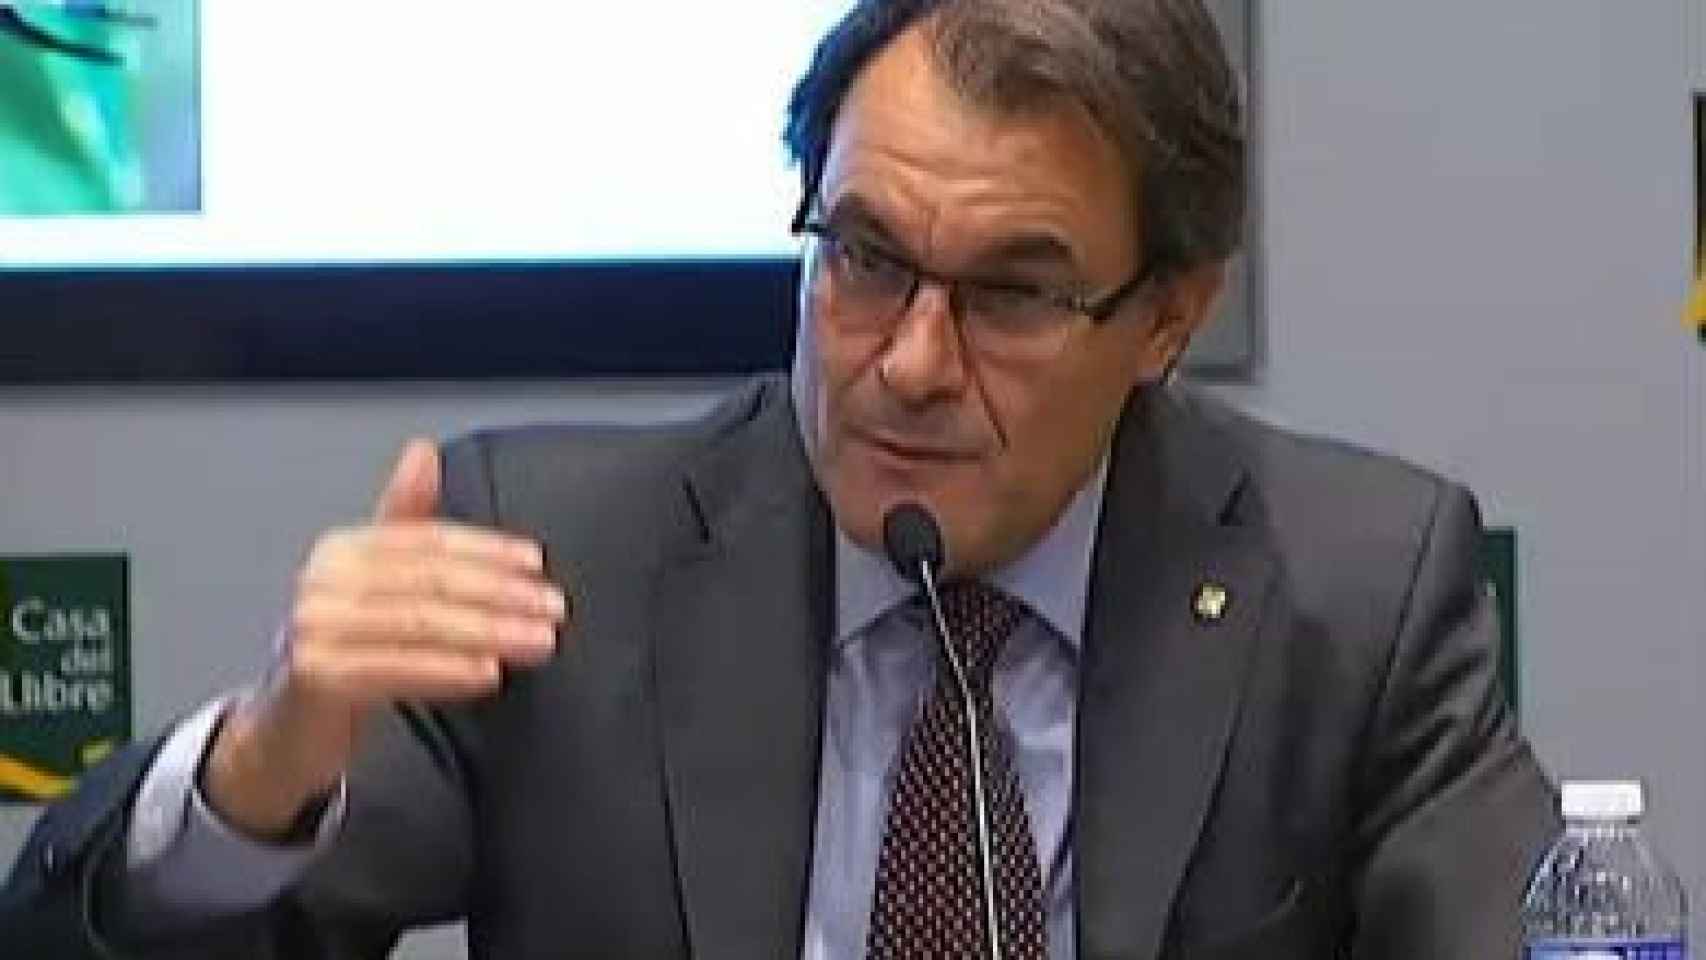 El presidente de la Generalidad, Artur Mas